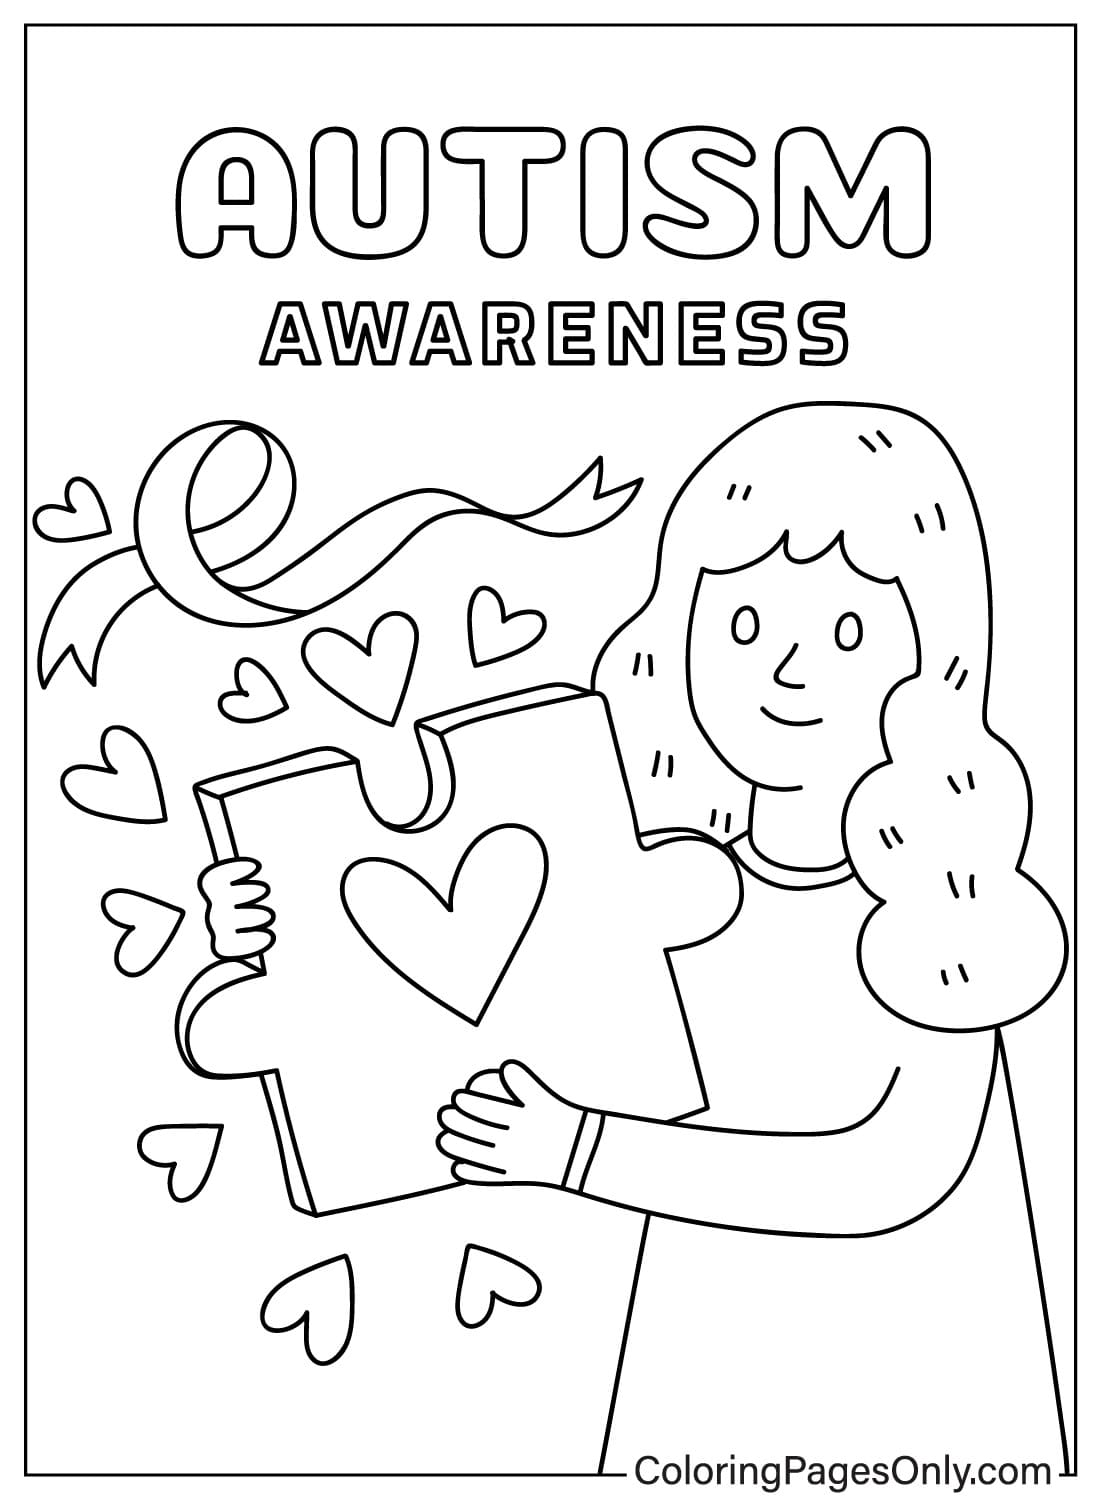 Цветные листы с информацией об аутизме, посвященные Всемирному дню распространения информации об аутизме